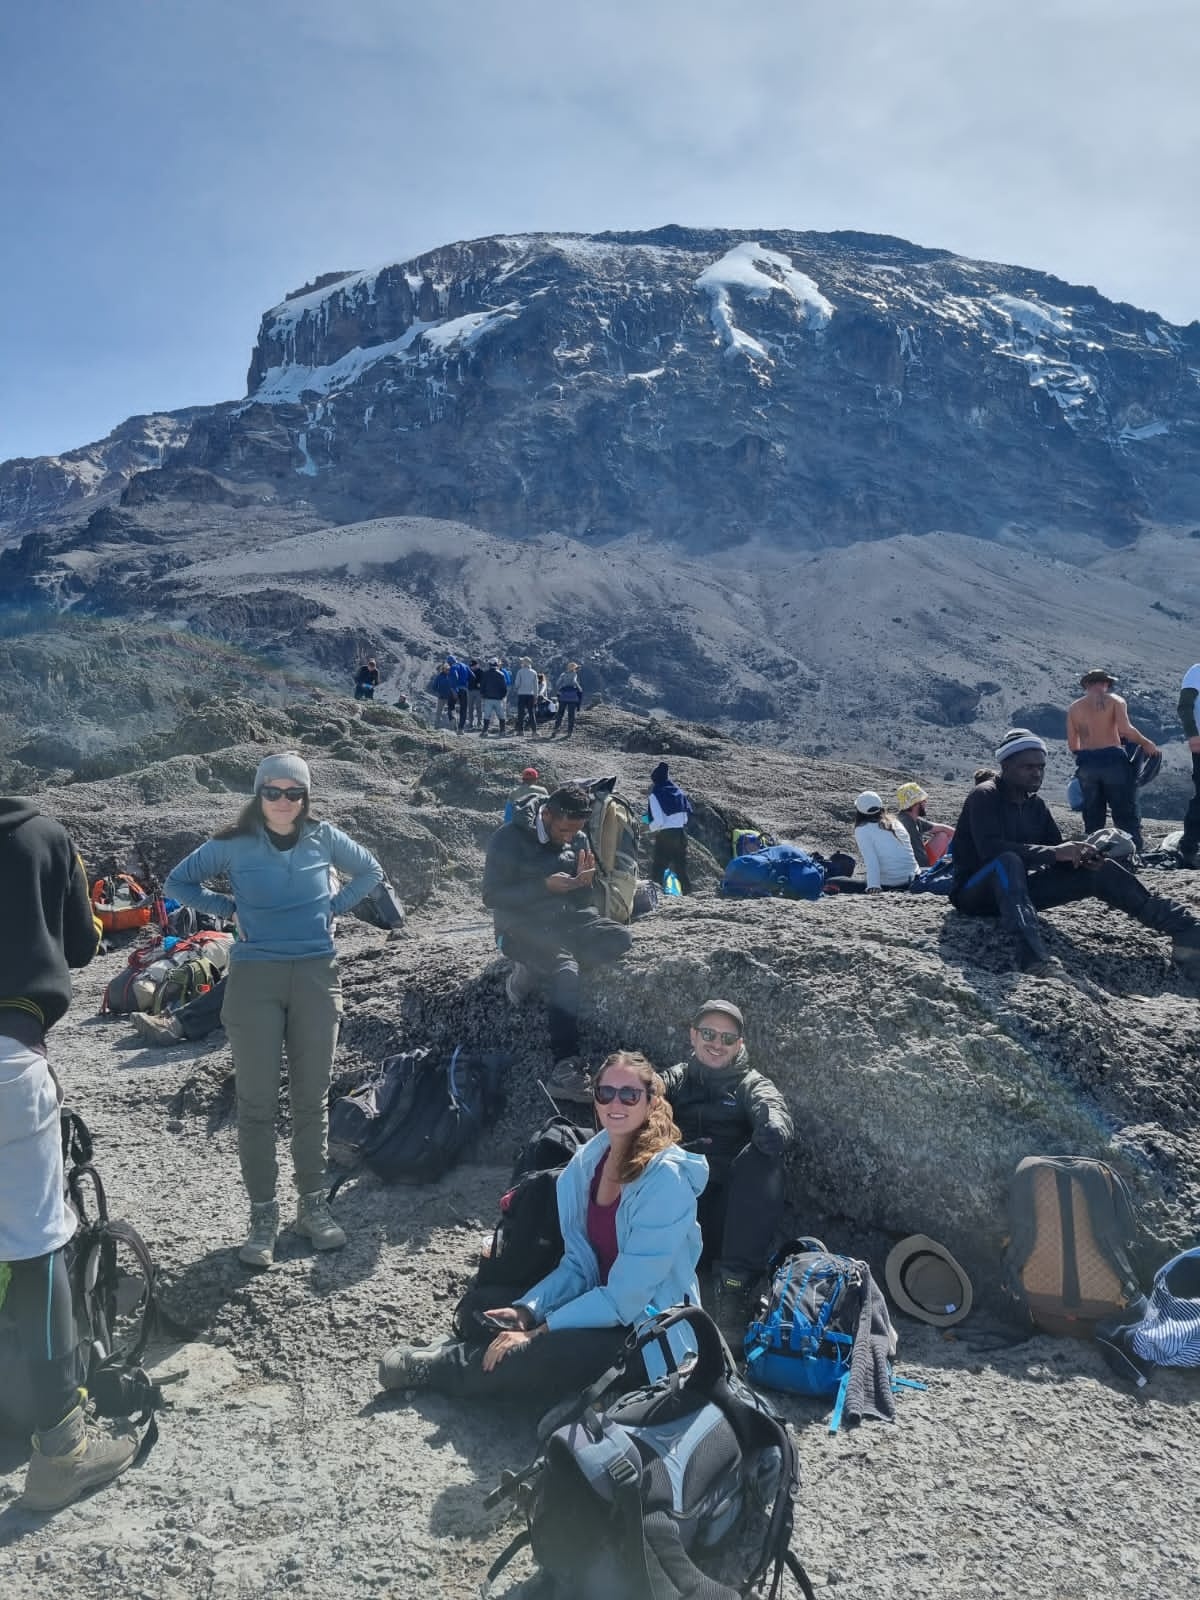 tourhub | Eddy tours and safaris | 11 Days Kilimanjaro Climbing via Northern circuit Route 